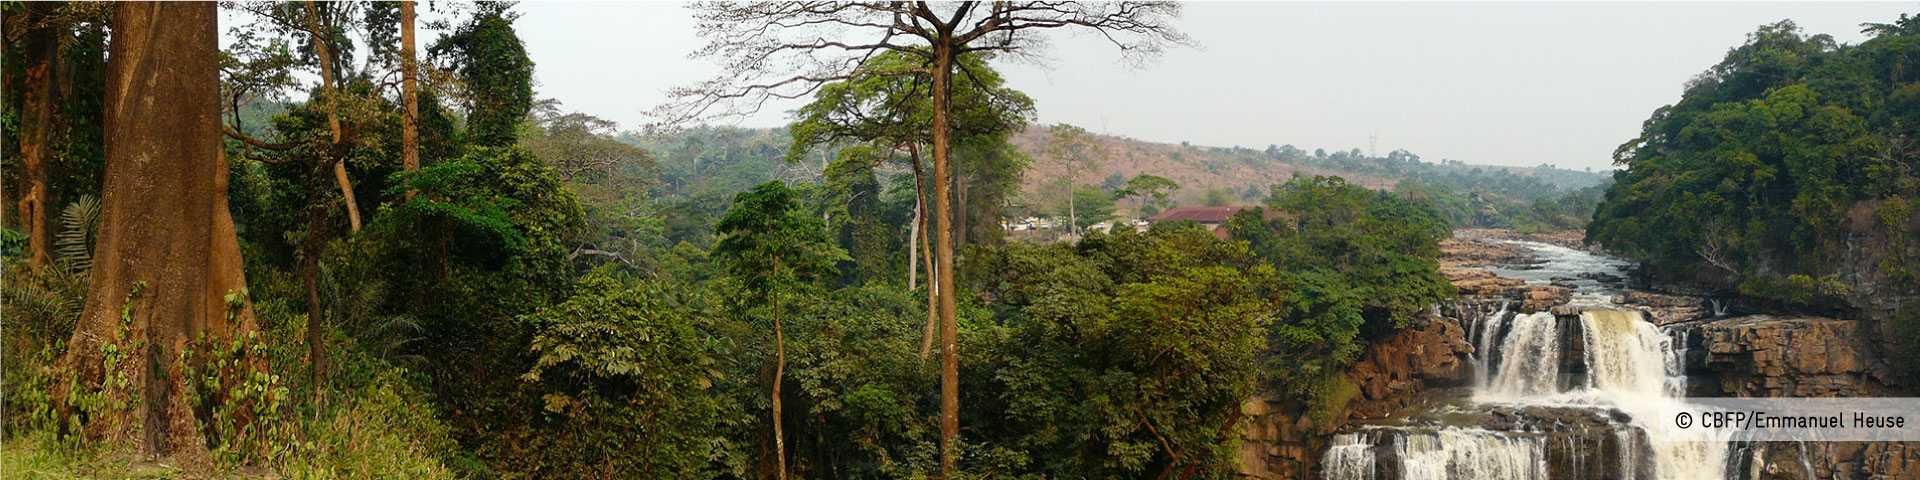 Hügelige Landschaft des Kongobeckens mit Regenwald und einem Wasserfall.